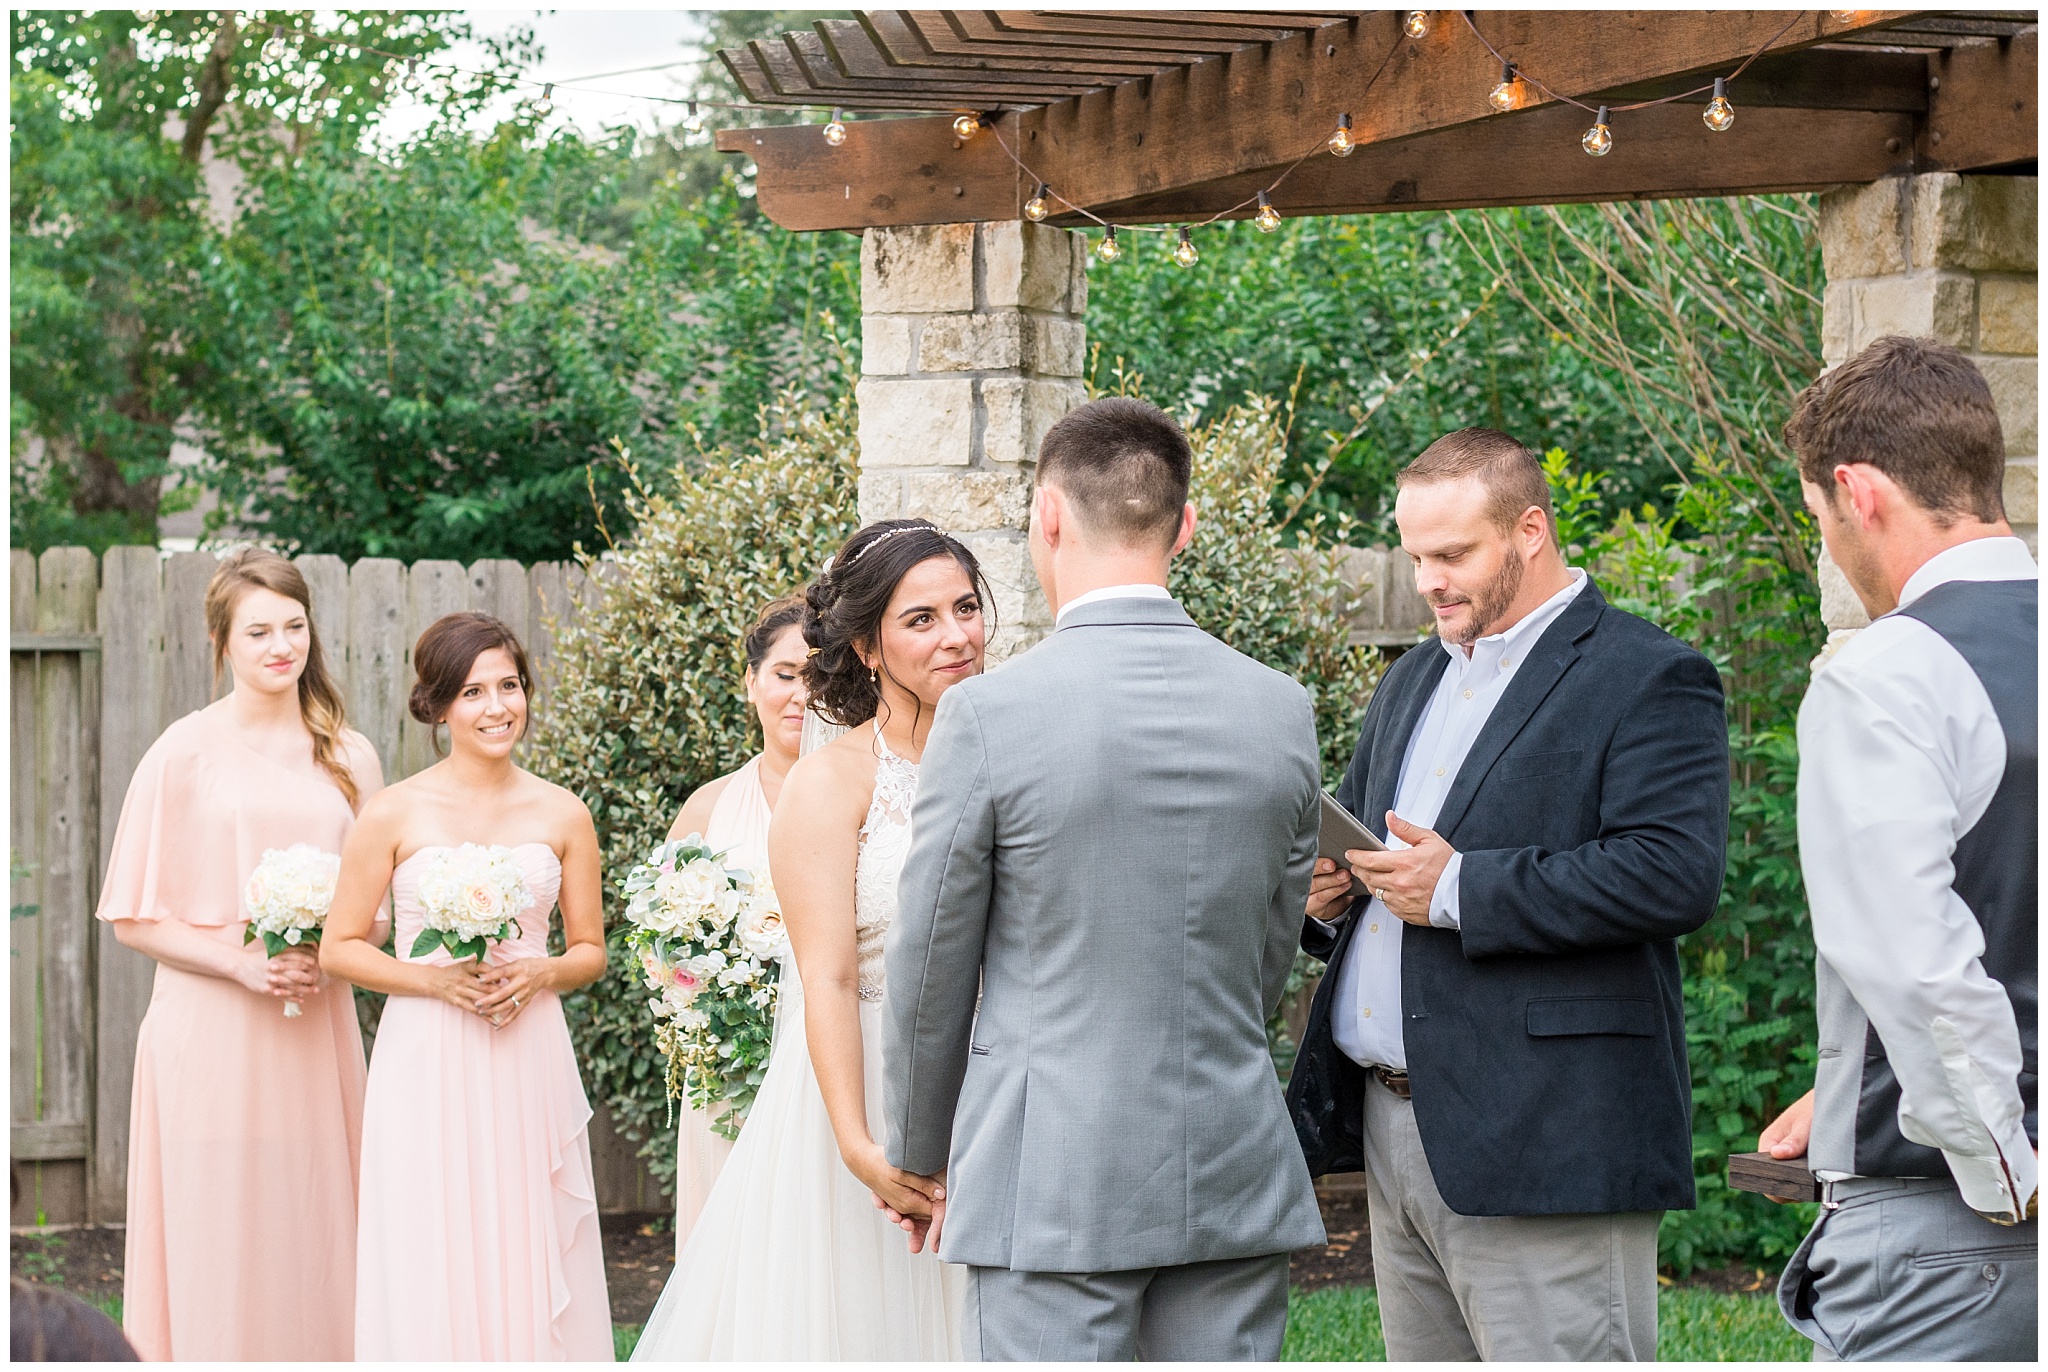 Joyful and Intimate Backyard Wedding Cypress Texas-2017-06-14_0017